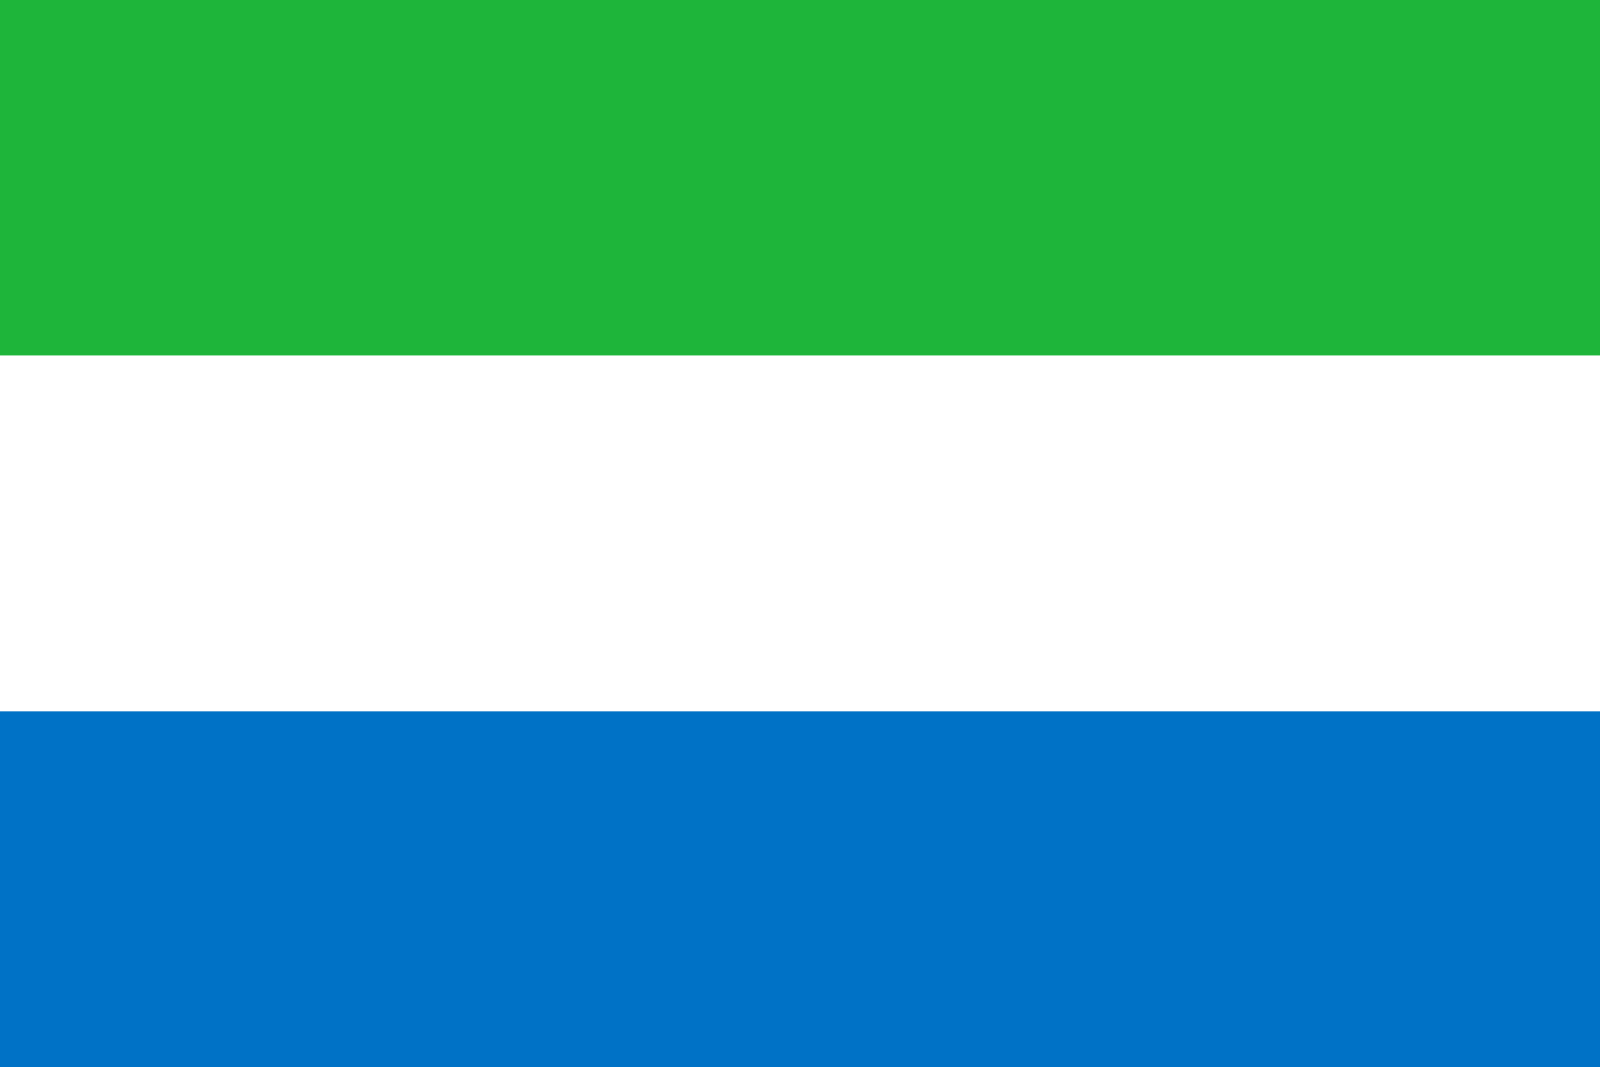 Bild der Staatsflagge Sierra Leone - mit einer Auflösung von 1600x1067 - Afrika